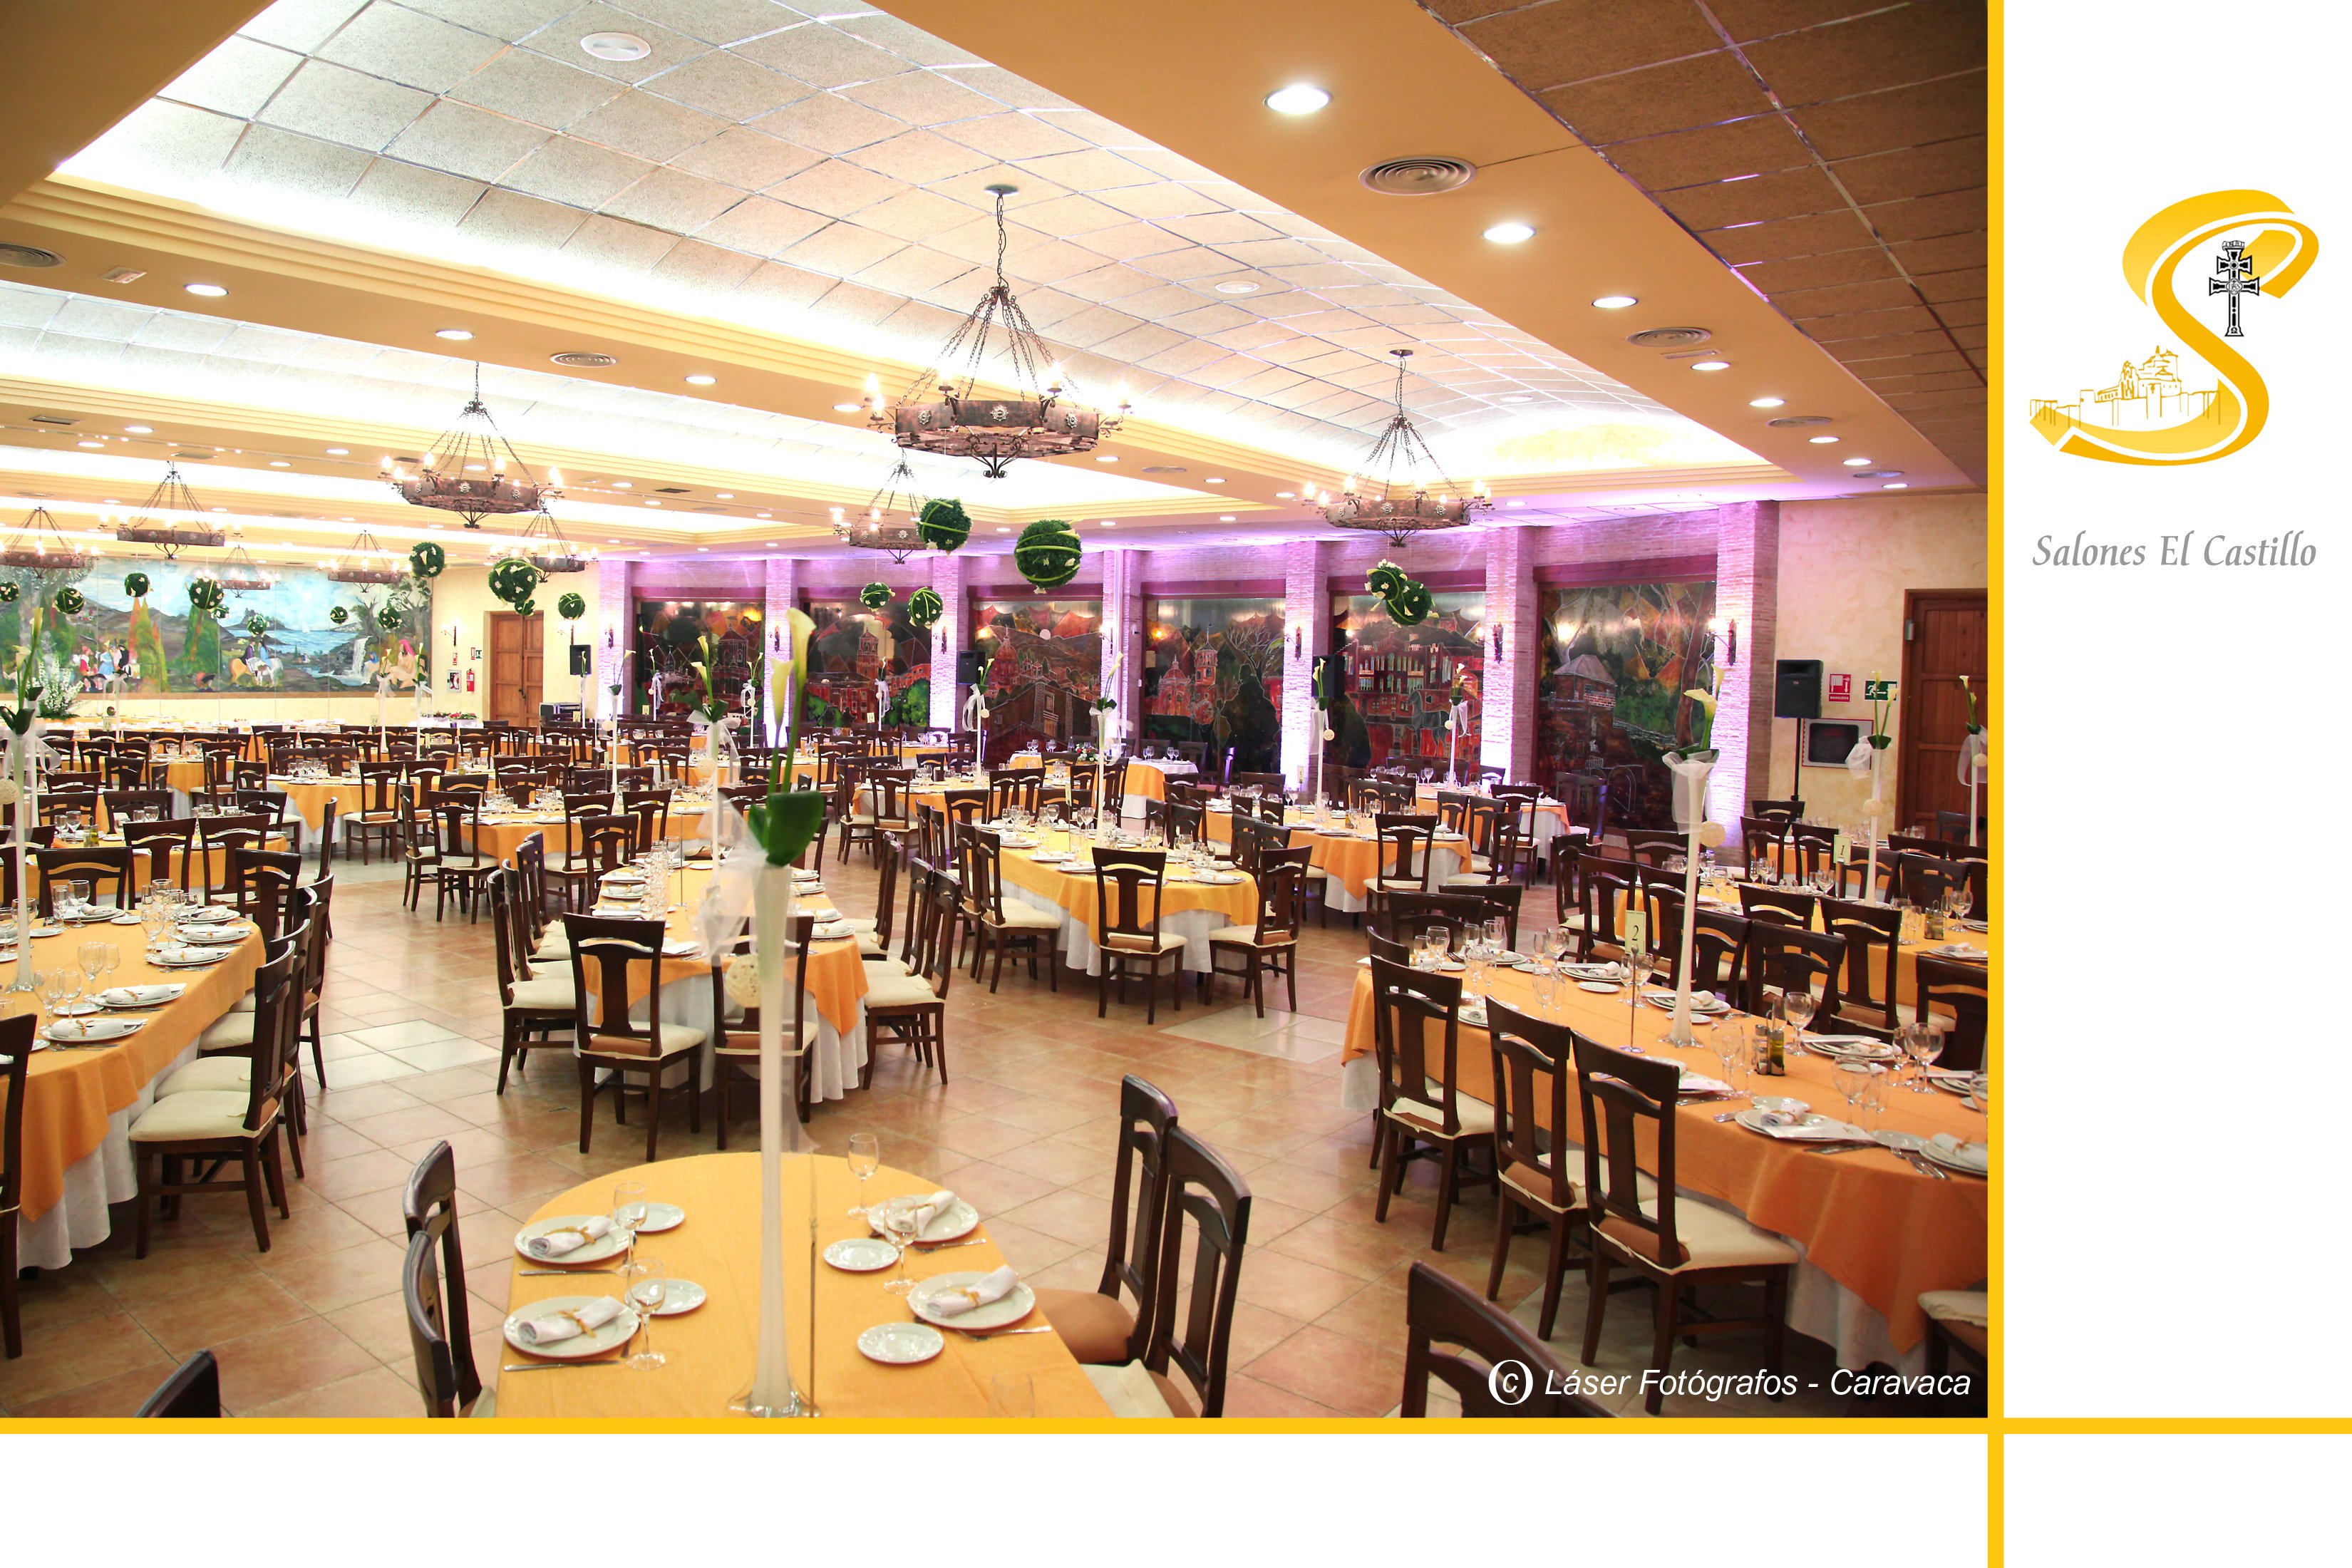 Salones Castillo Restaurant in Caravaca de la Cruz: 1 reviews and 2 photos